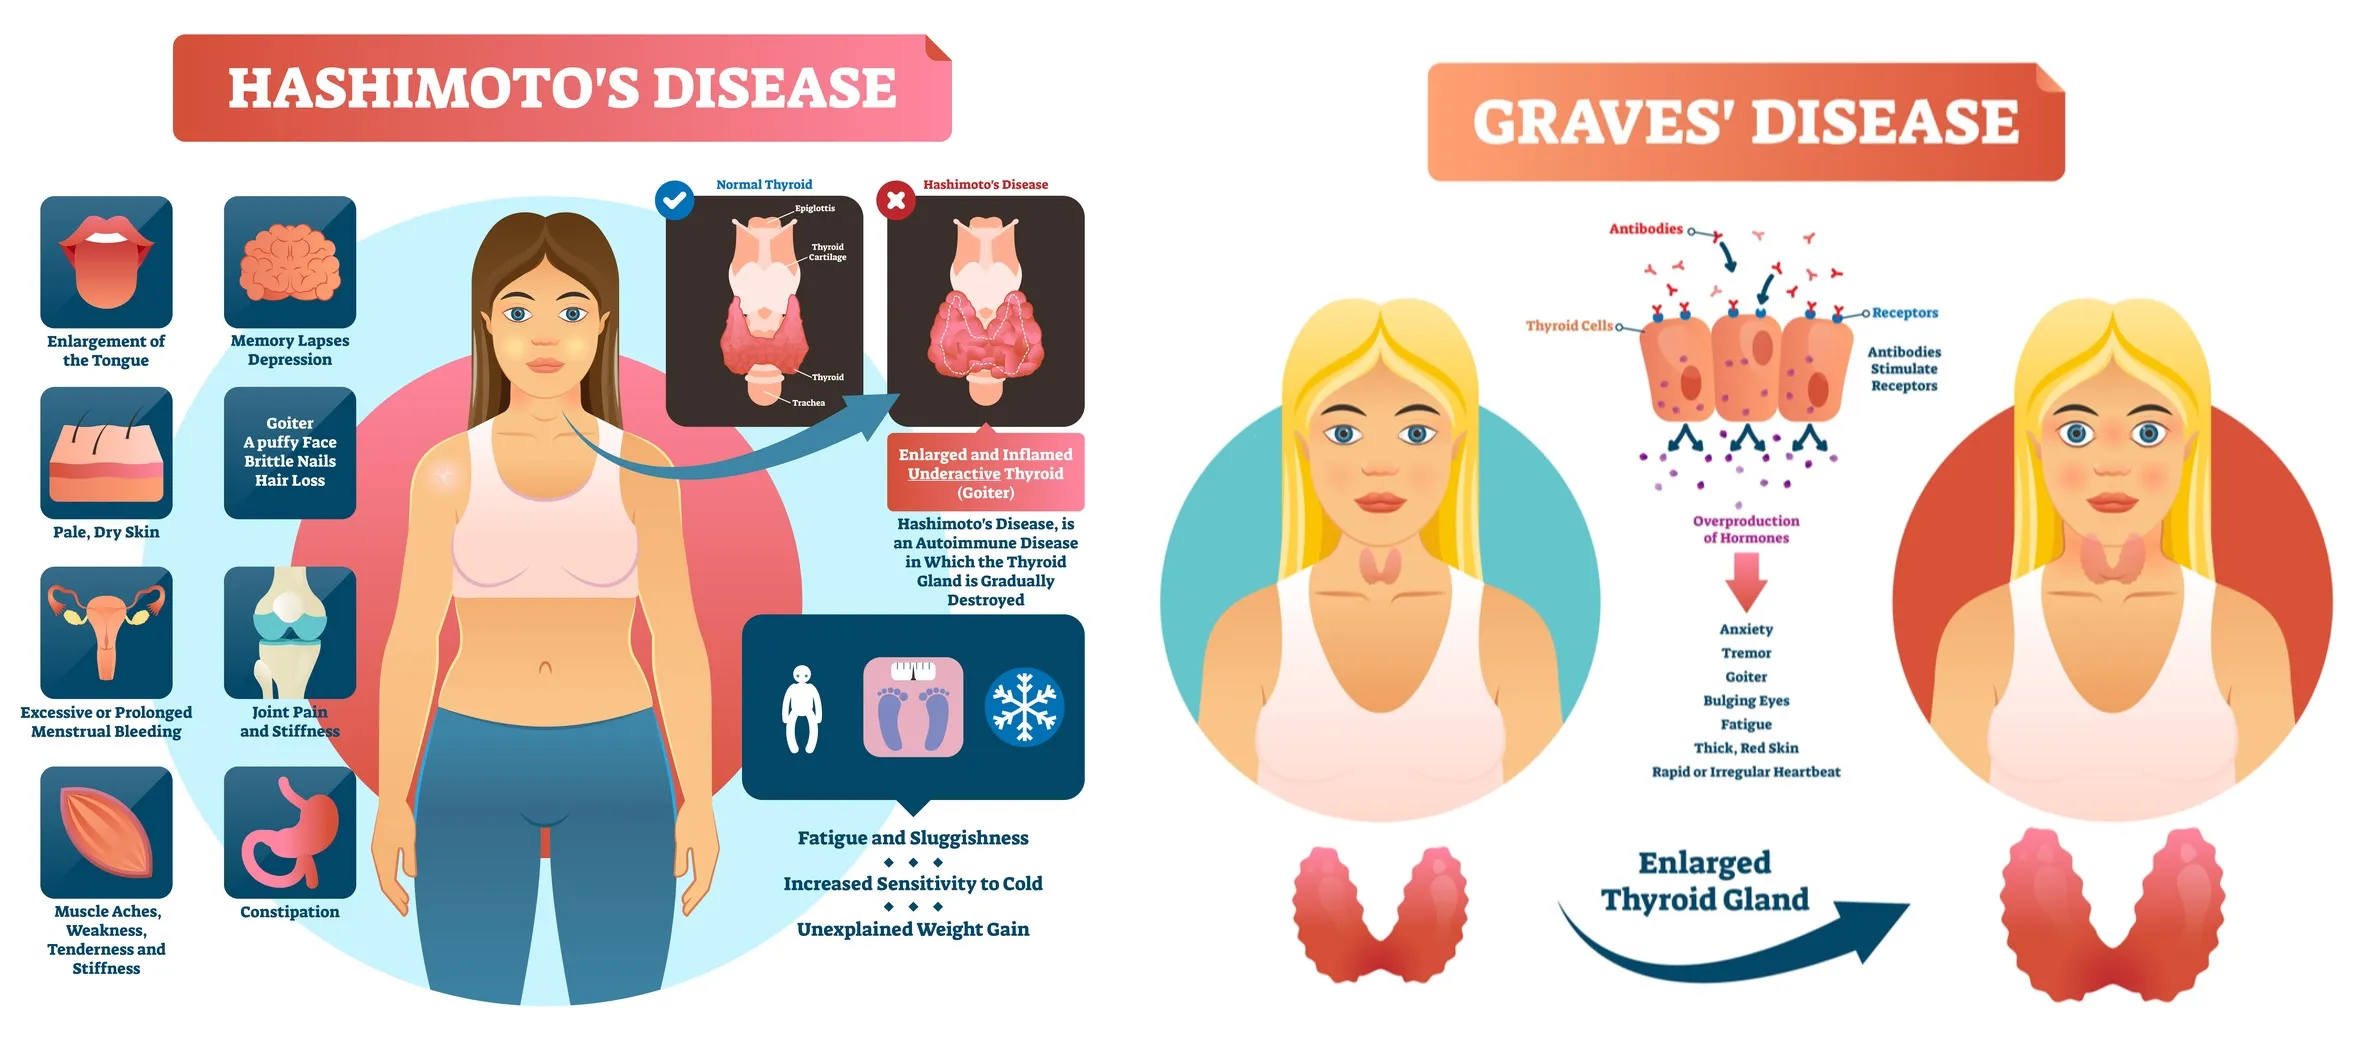 Hashimoto's thyroiditis and Graves' disease common symptoms.